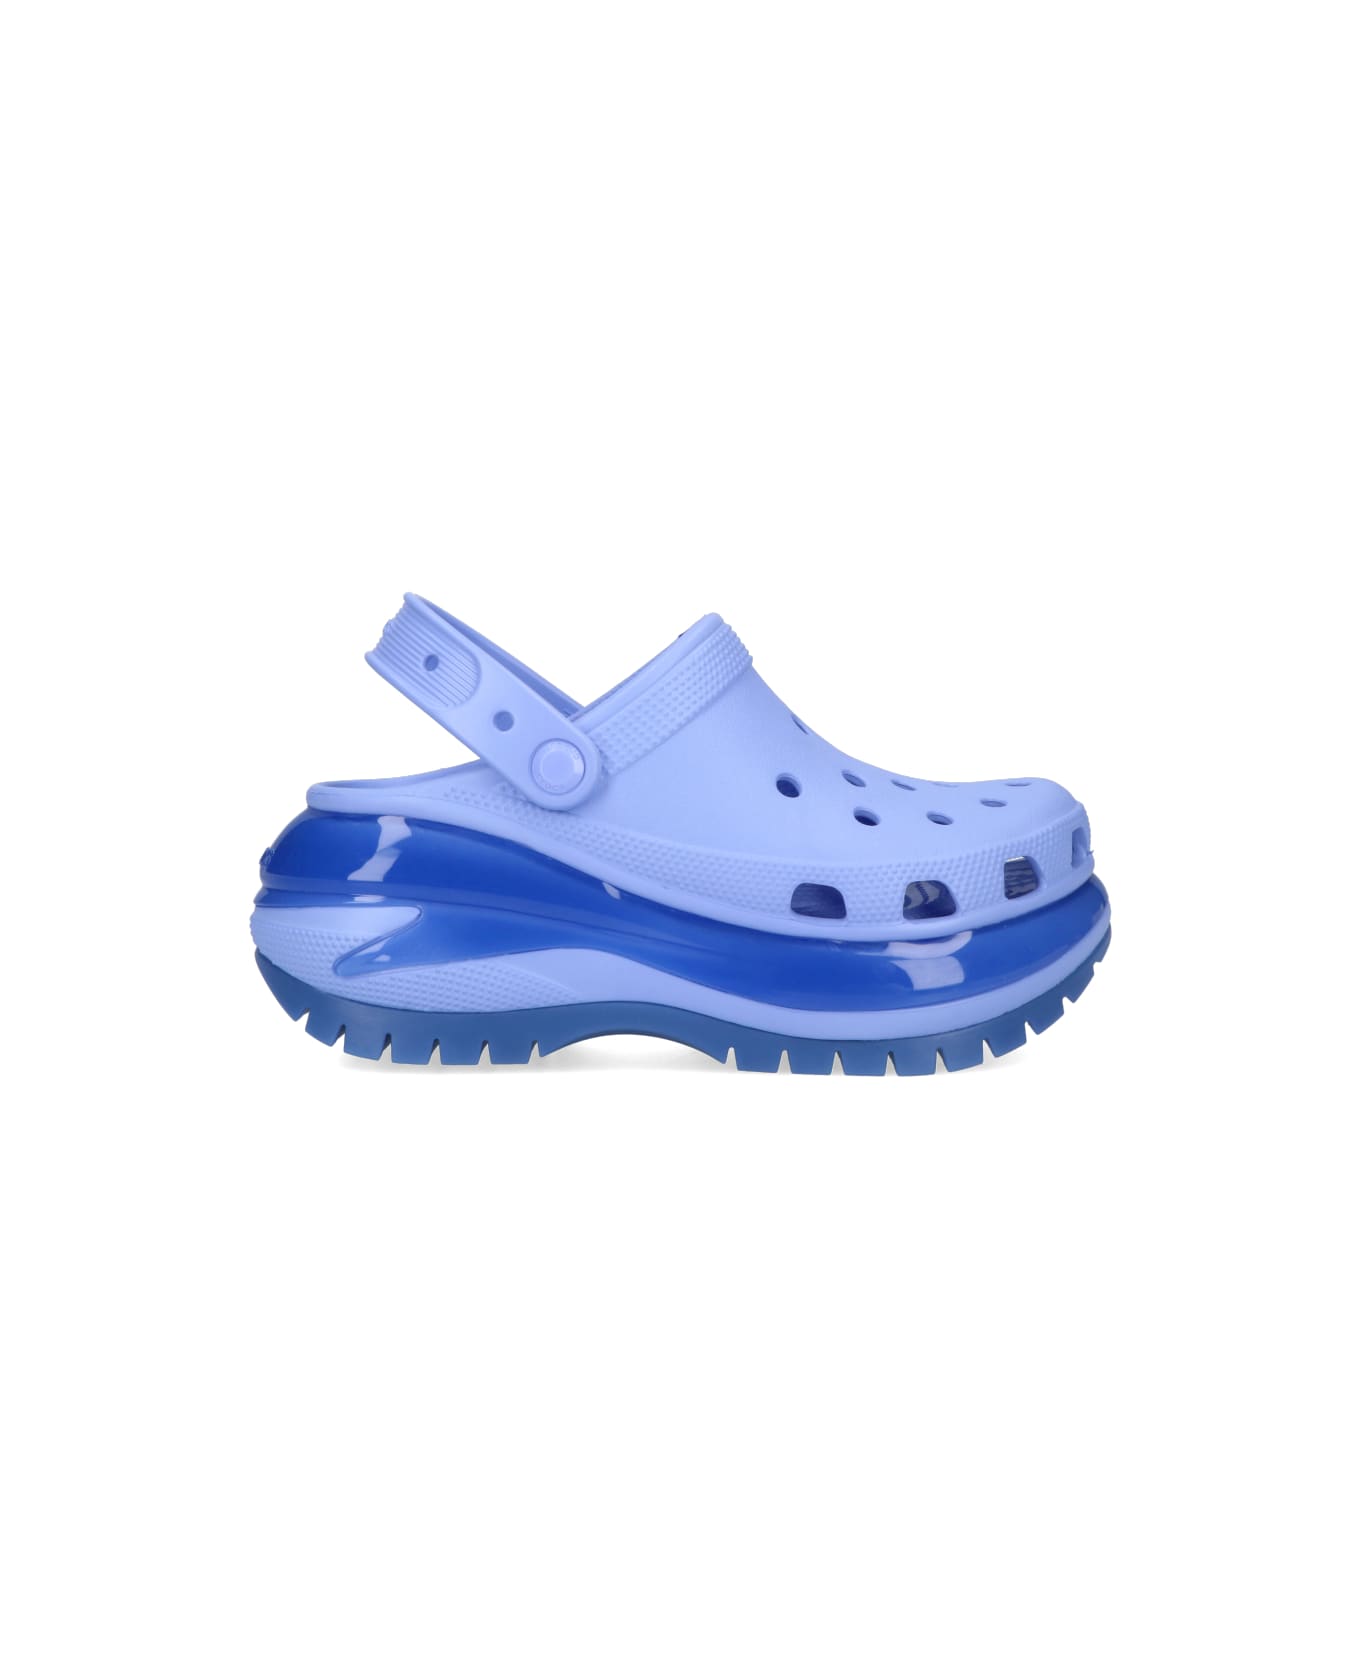 Crocs Flat Shoes - Light blue